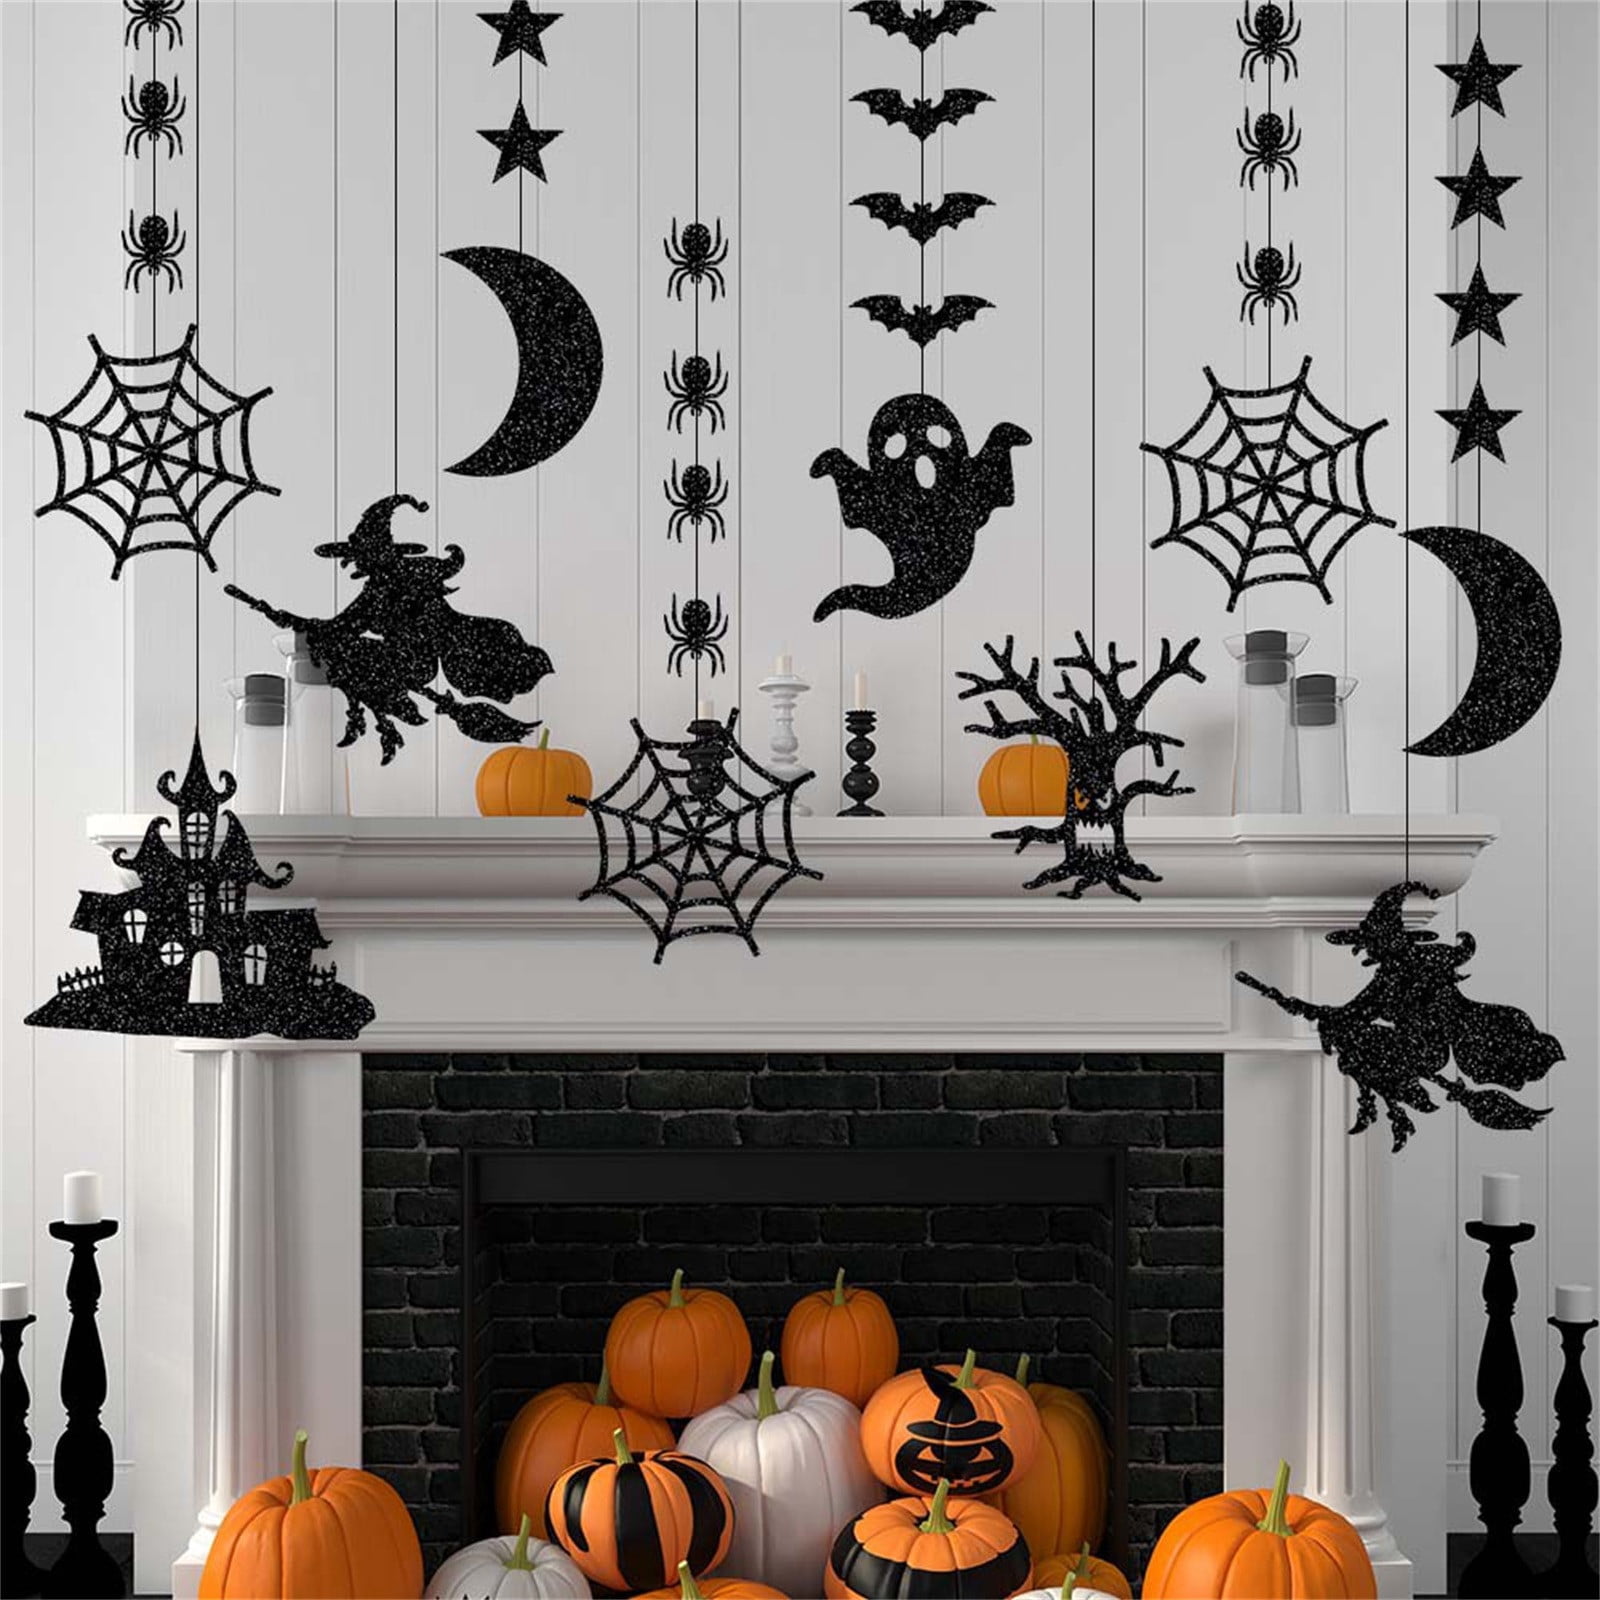 Giảm giá halloween decorations on sale | Mua đồ trang trí Halloween giá rẻ tại đây